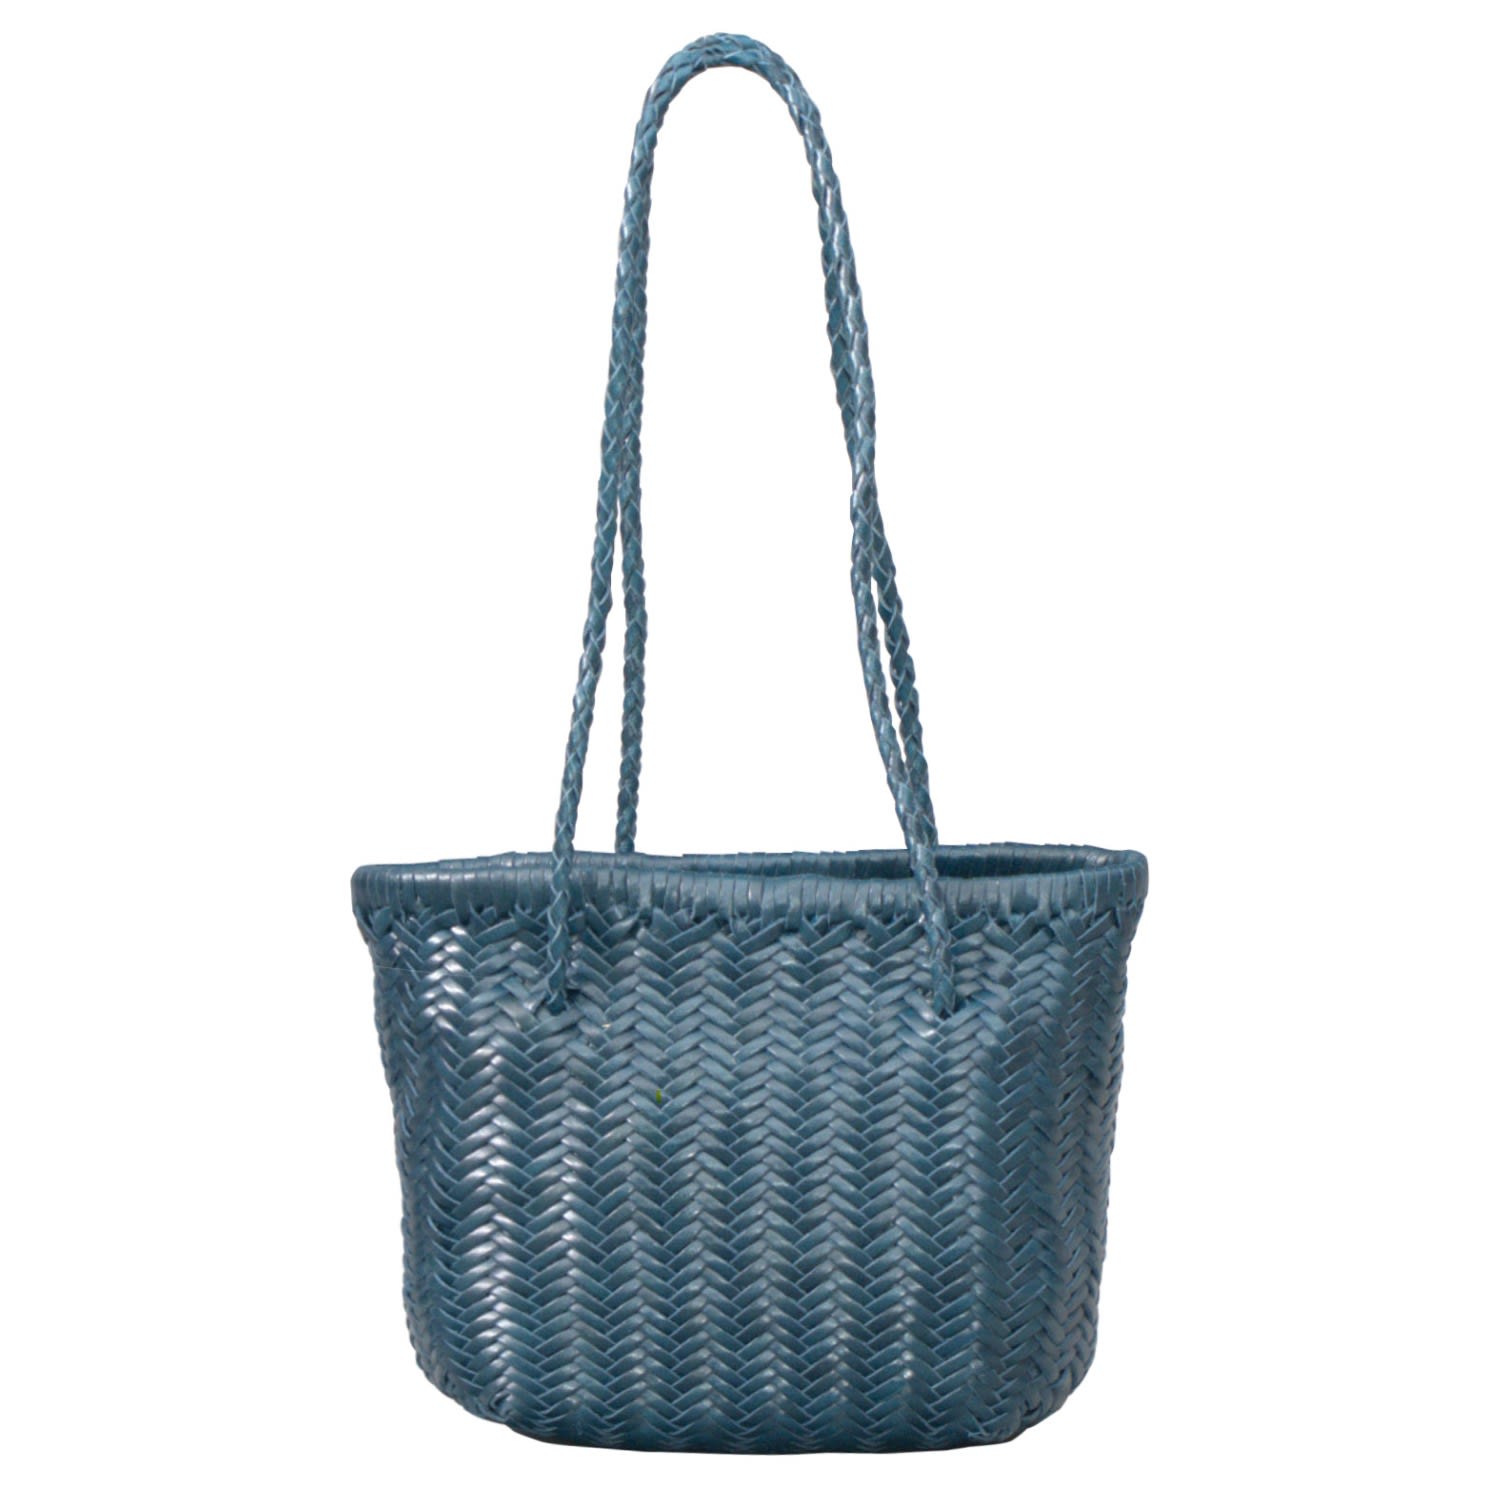 Rimini Women's Woven Leather Mini Beach Bag - Royal Blue